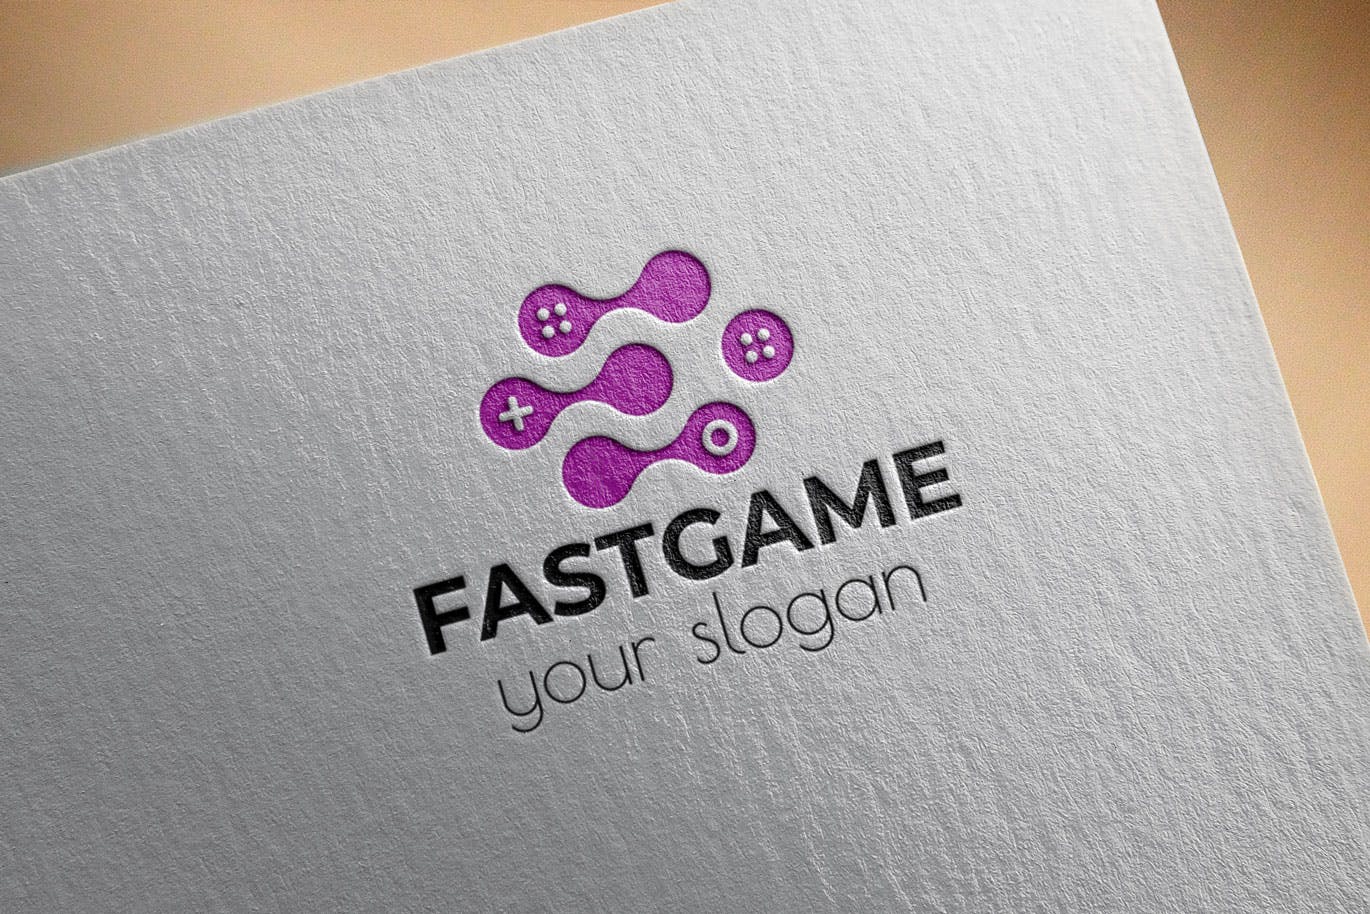 游戏加速器Logo设计蚂蚁素材精选模板 Fast Game Business Logo Template插图(2)